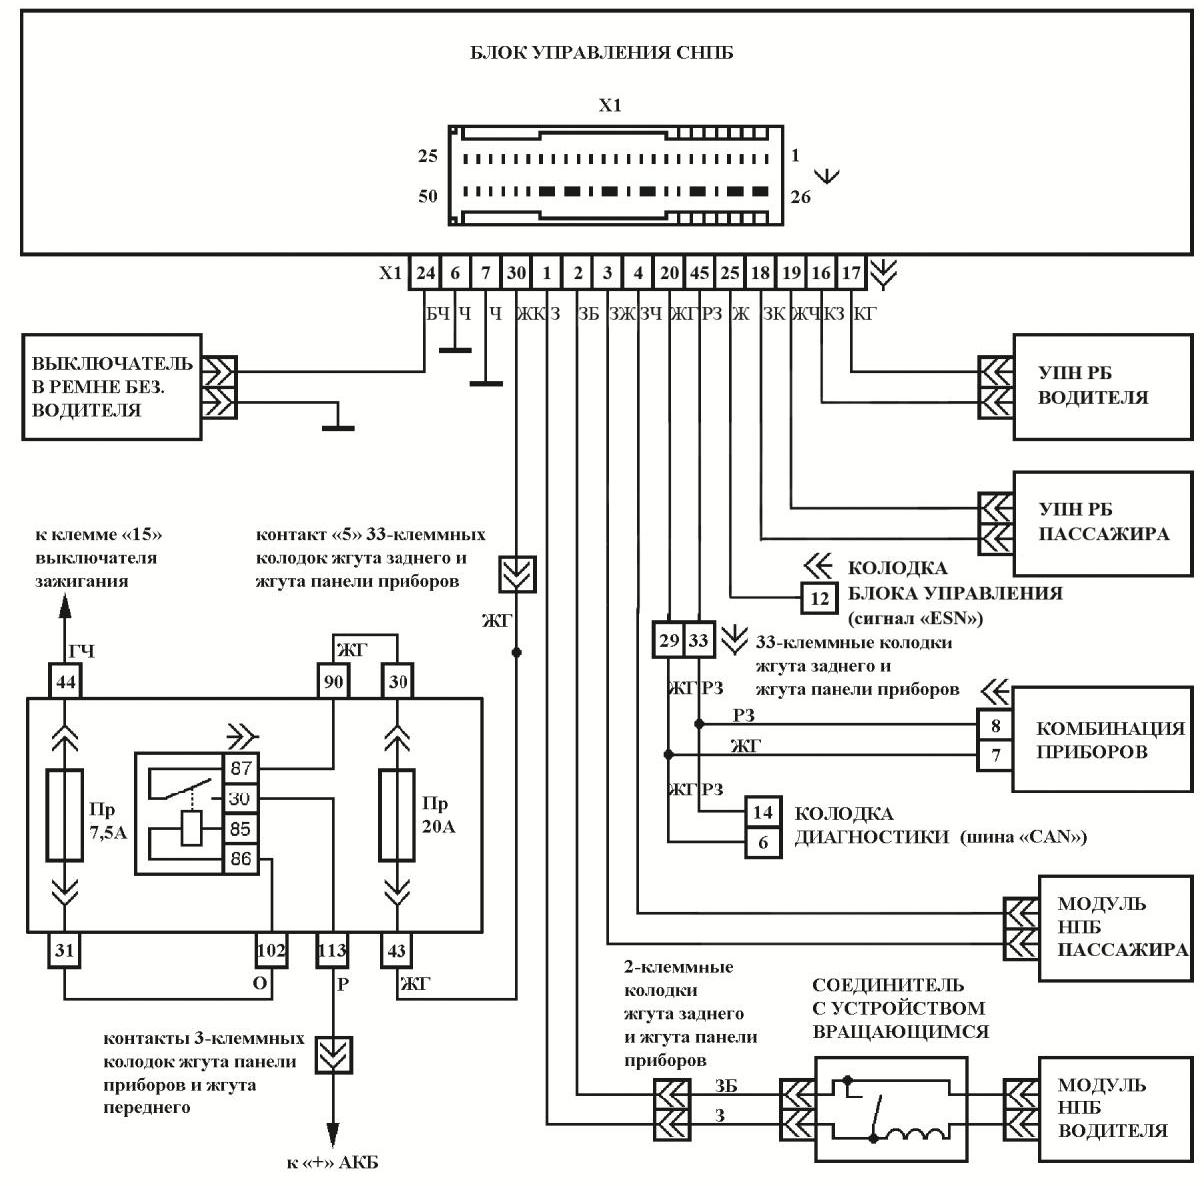 Схема электрических соединений четырехканальной СНПБ автомобиля LADA 2190 